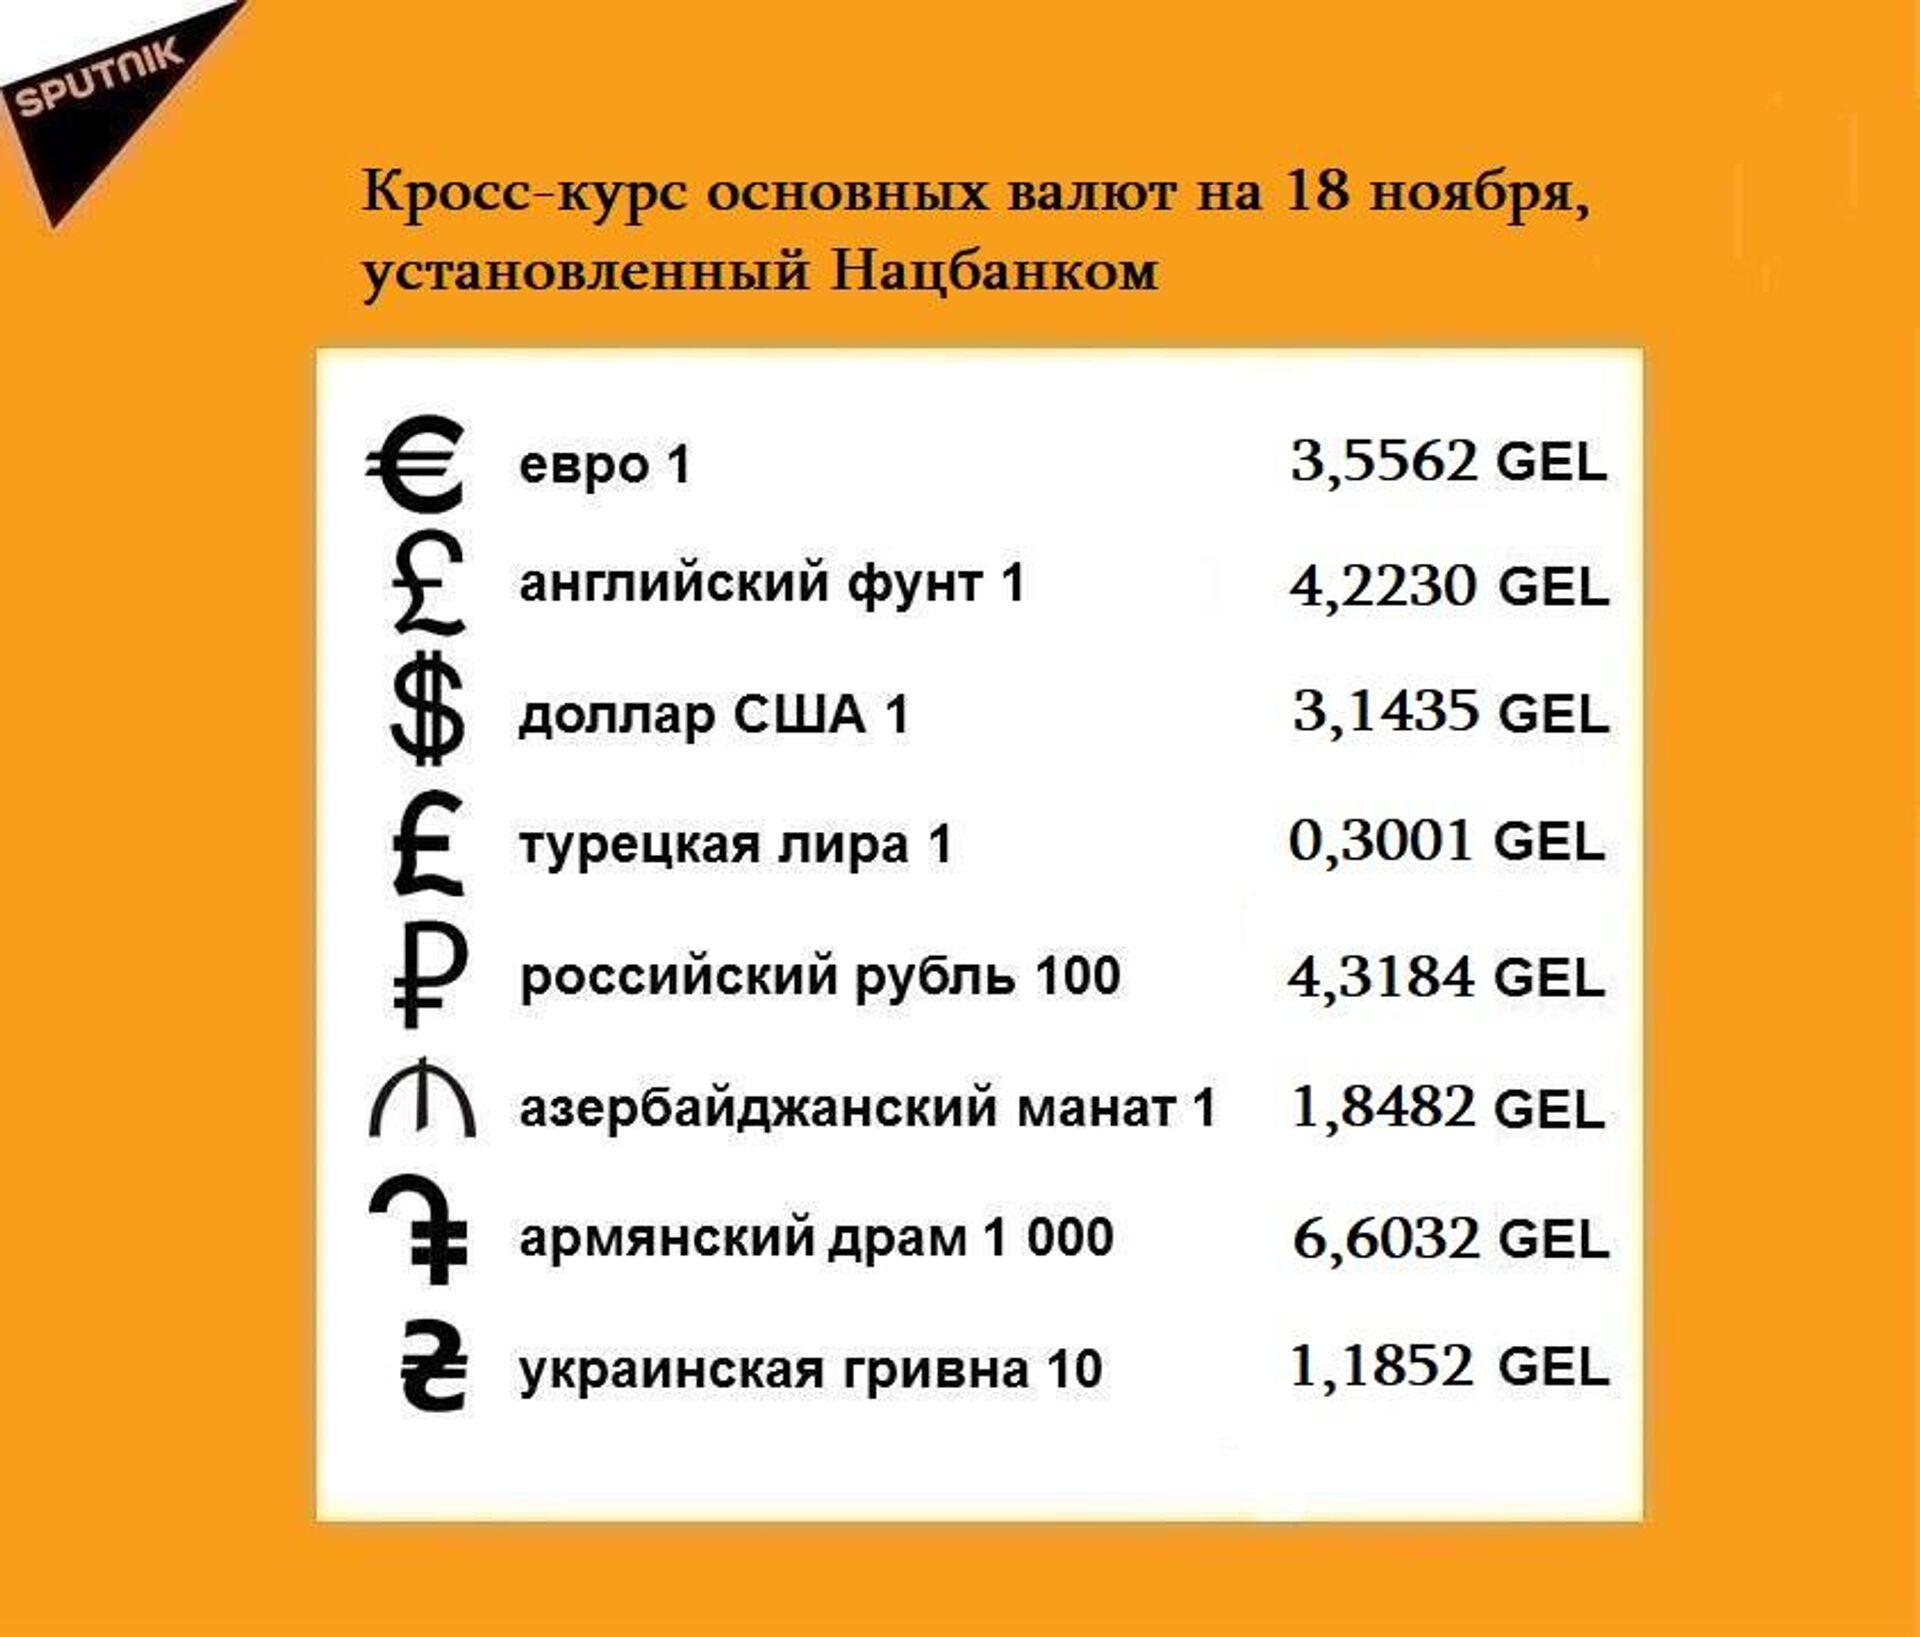 Кросс-курс основных валют на 18 ноября - Sputnik Грузия, 1920, 17.11.2021